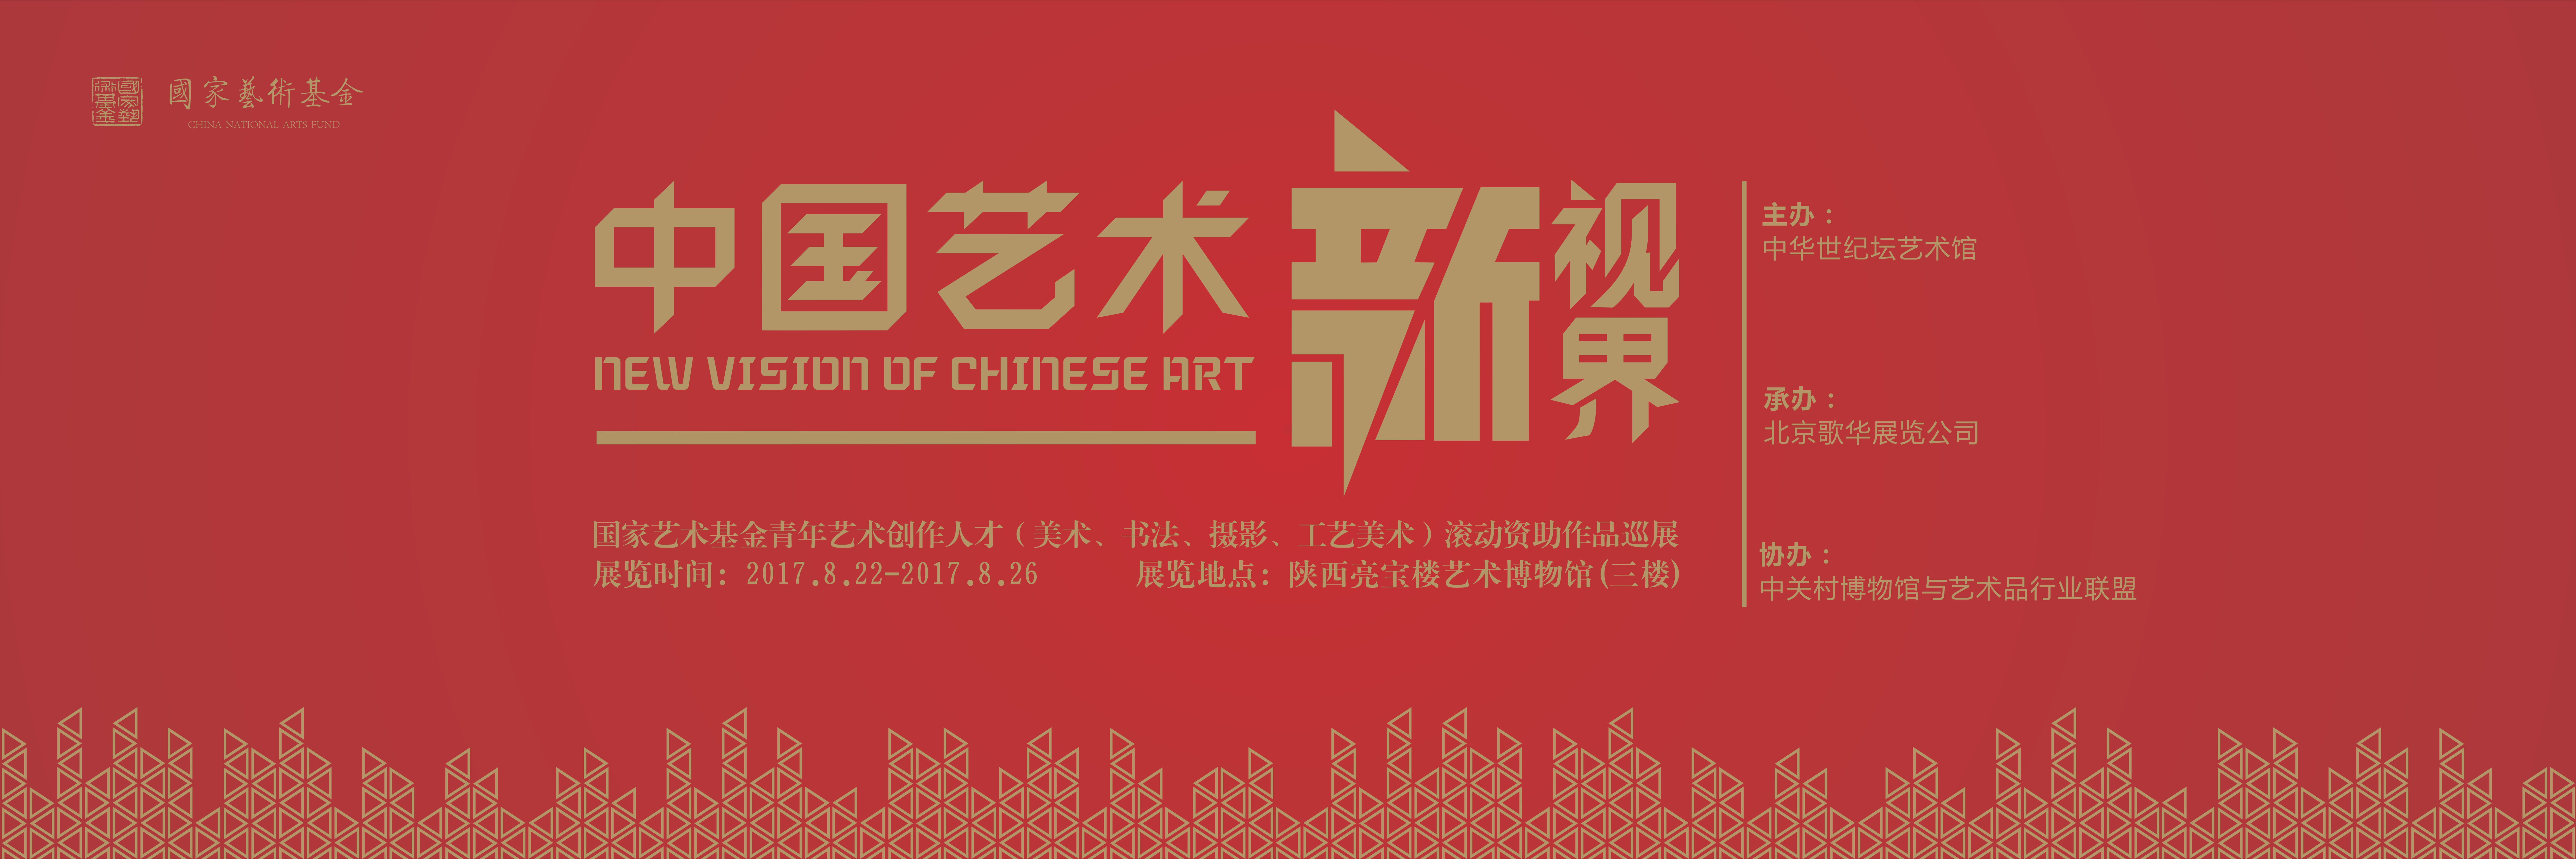 展讯|中国艺术新视界巡展走进陕西西安